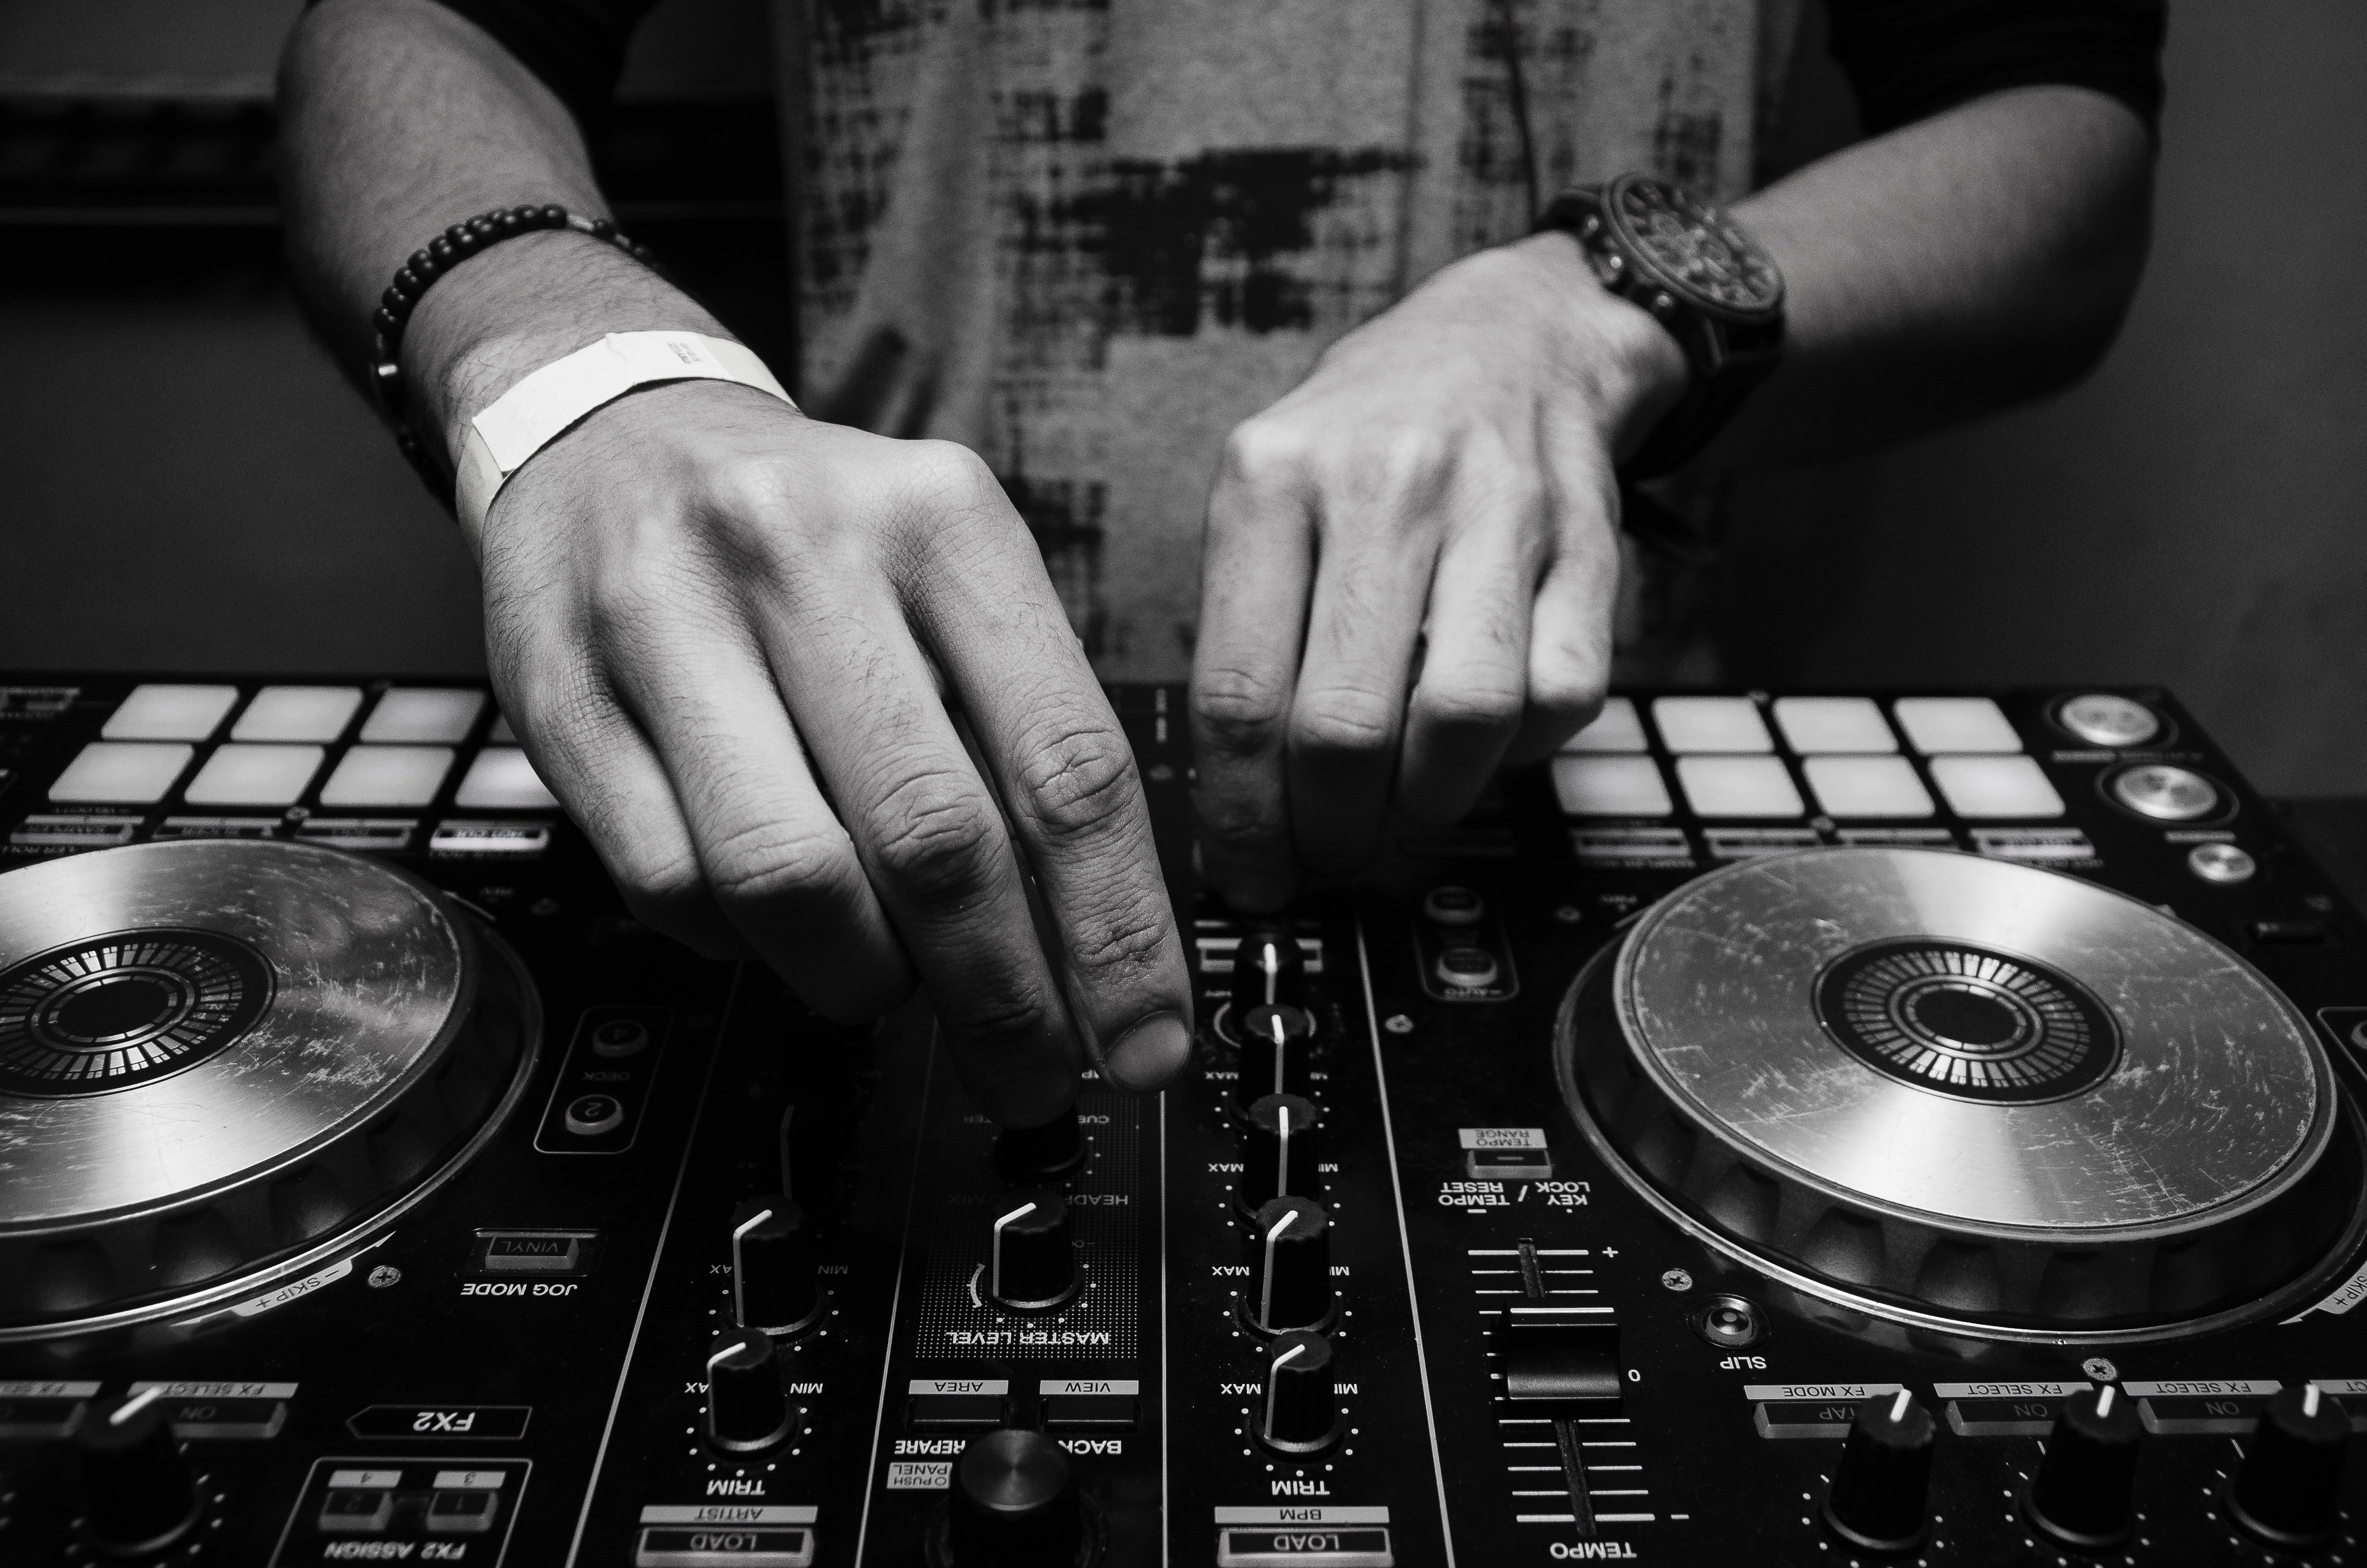 Herr Adams hatte versprochen, beim Abschlussball der DJ zu sein. | Quelle: Pexels